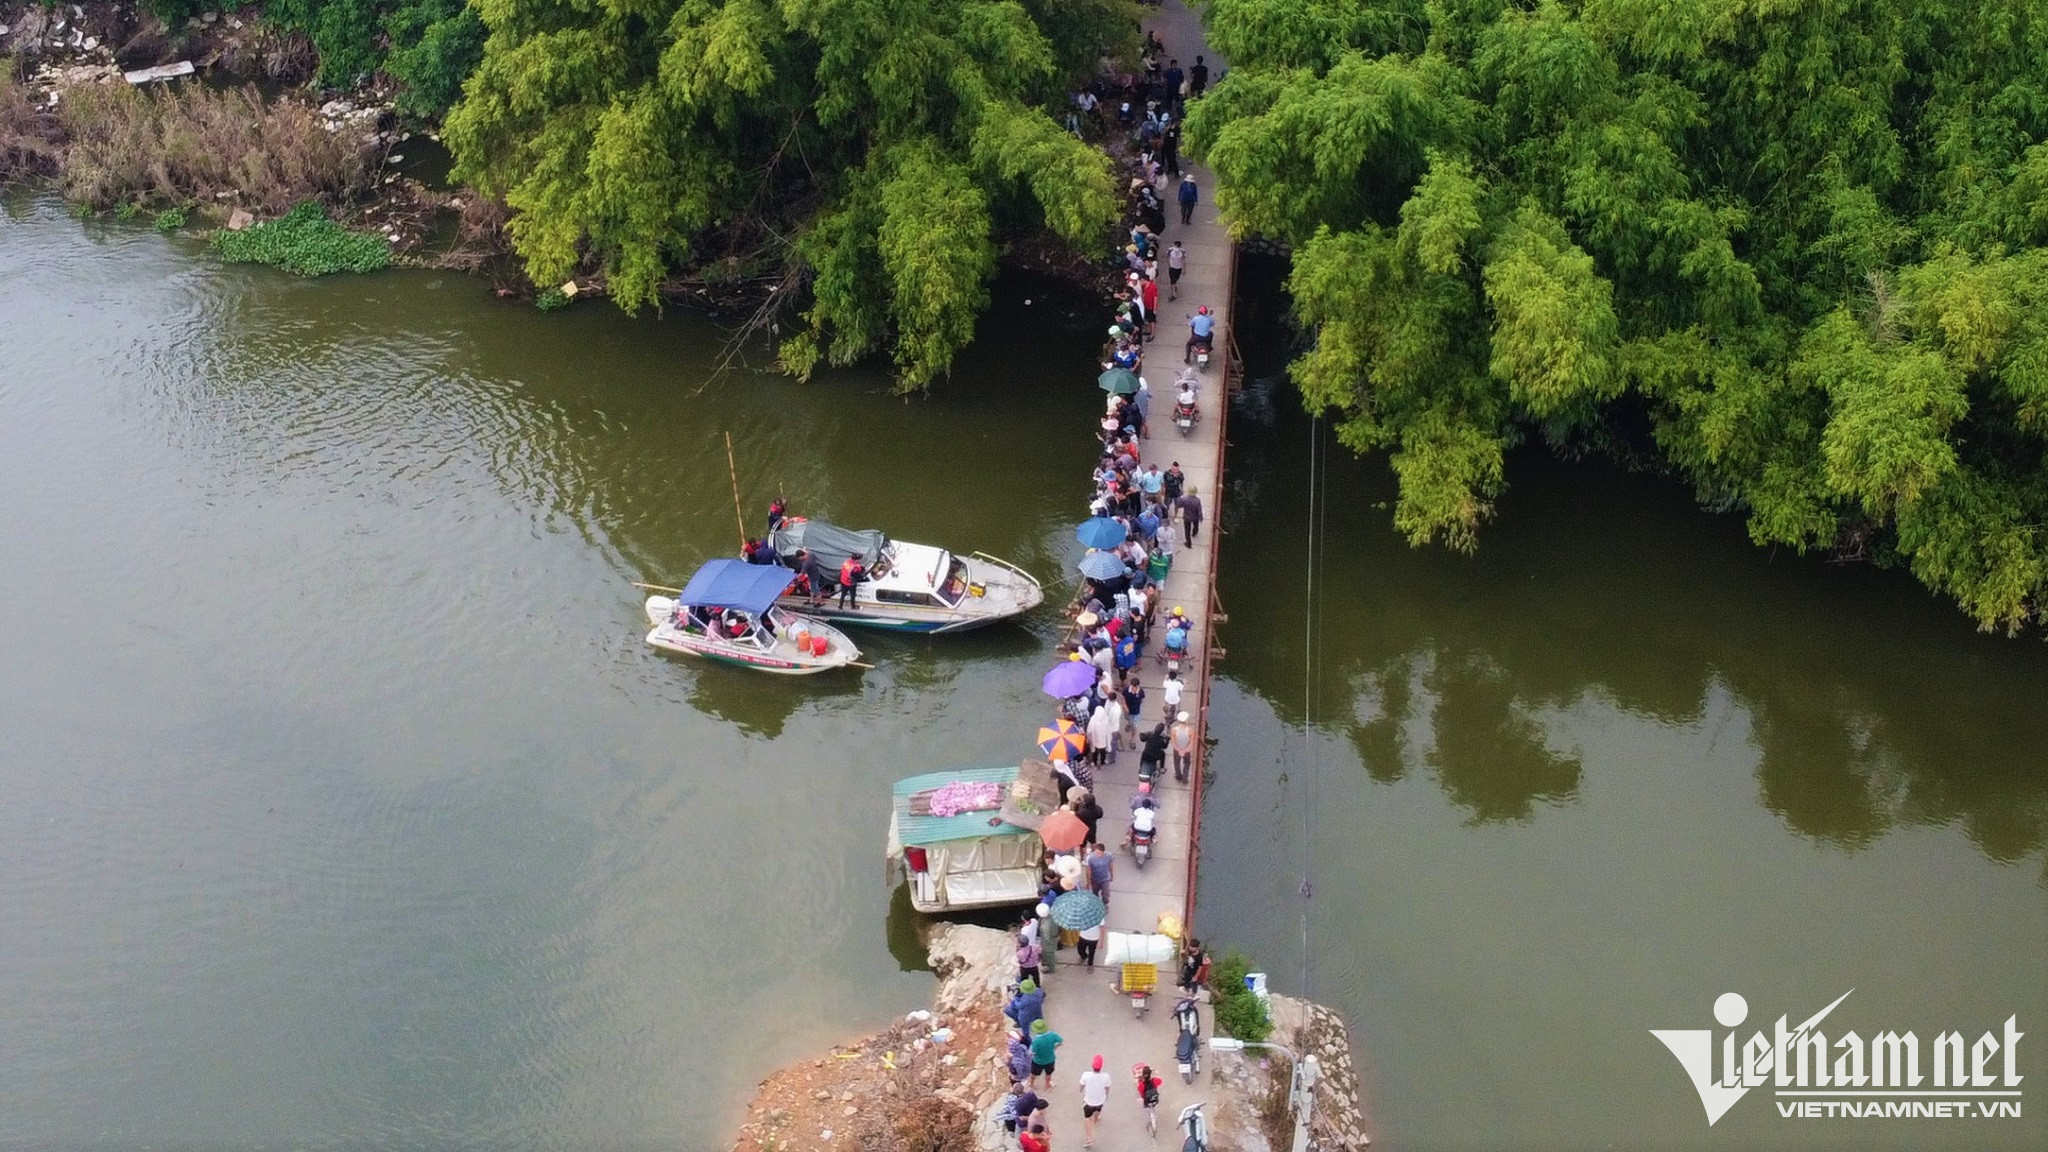 Đội cứu hộ 116 sử dụng 2 ca nô với gần 20 thành viên, rà cả dưới nước và trên bờ quanh khu vực quanh cầu Cù Sơn để tìm kiếm nạn nhân.